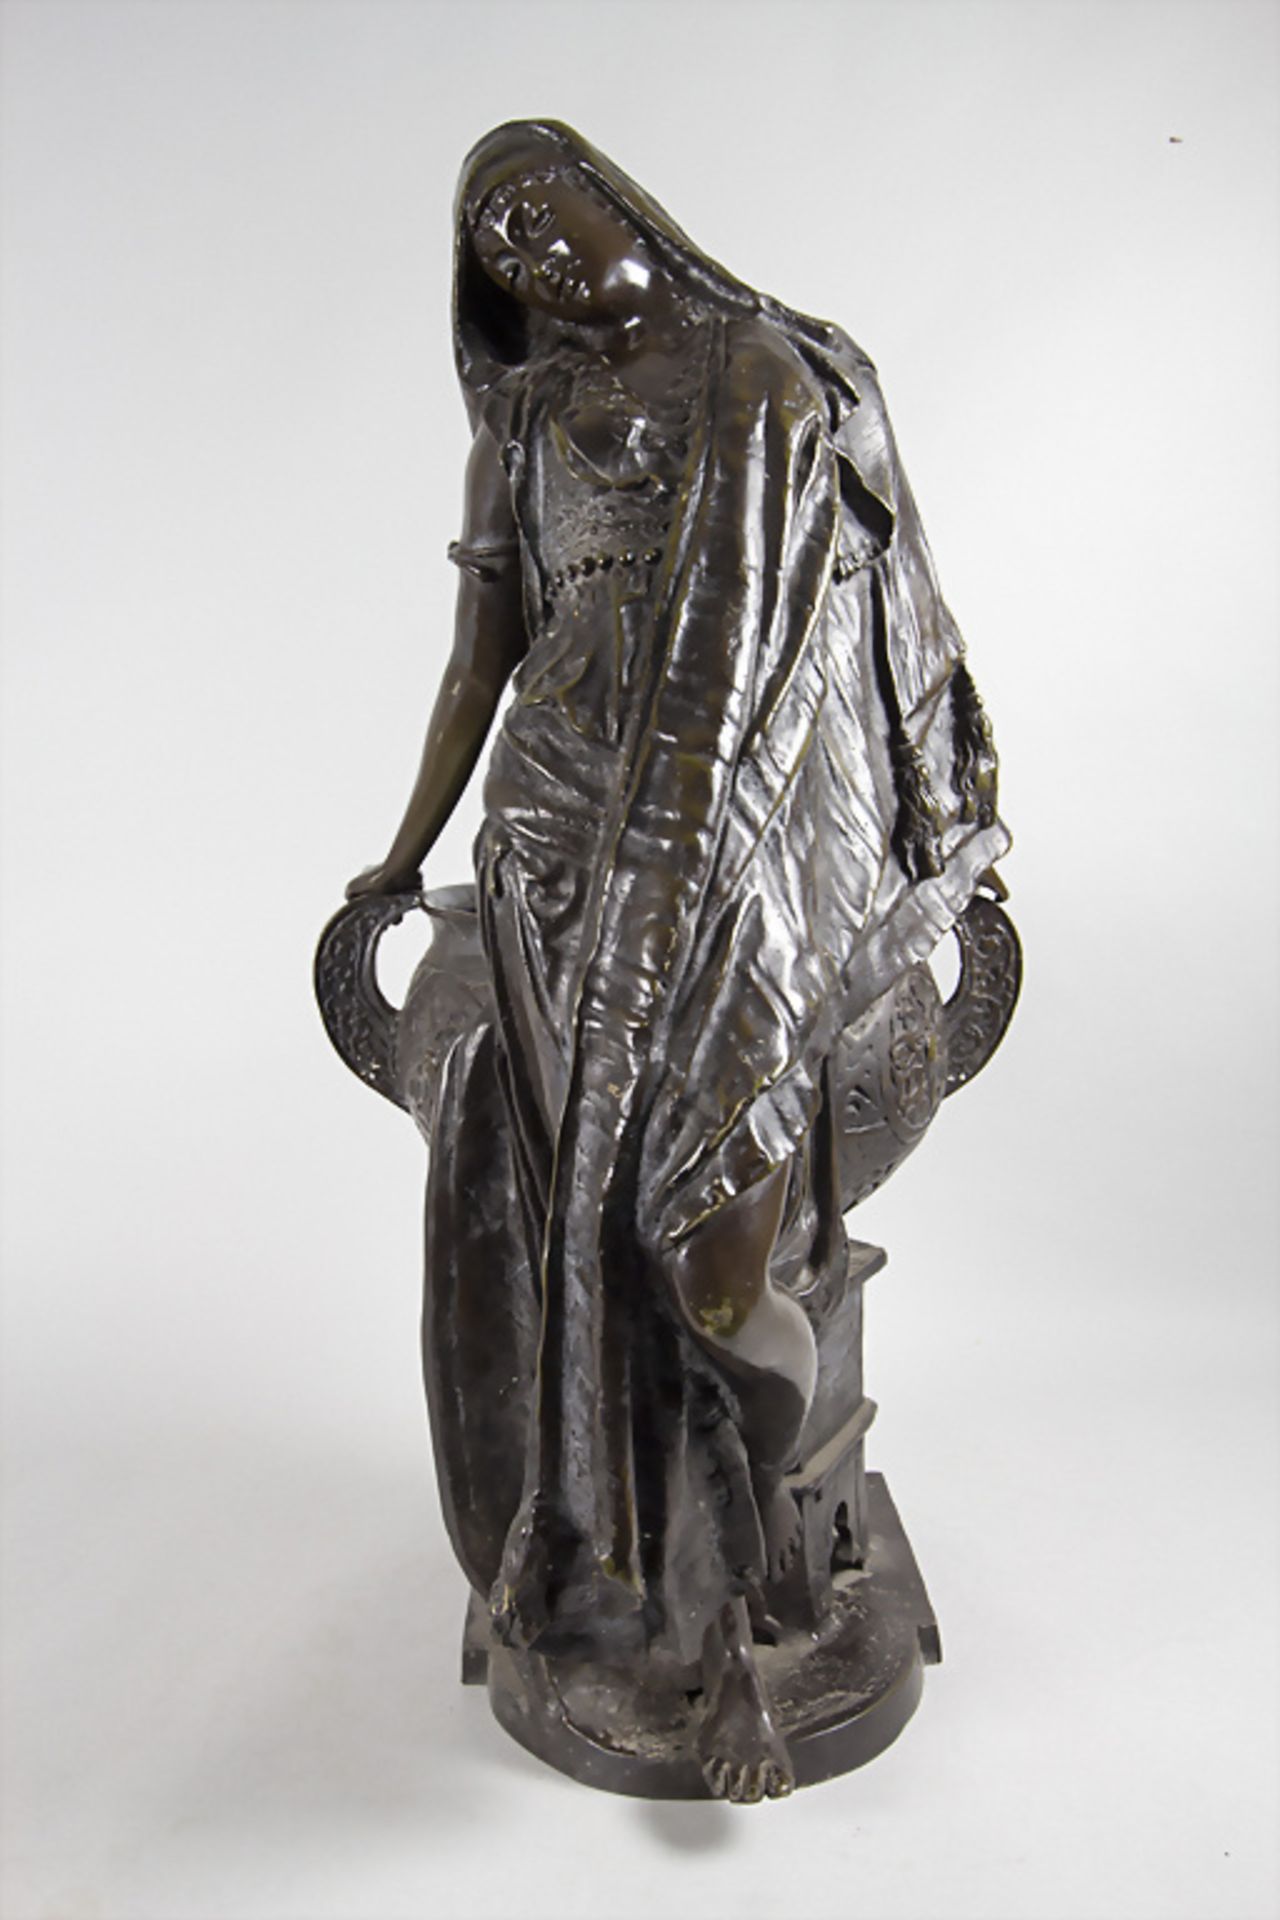 Jim Davidson, Bronzeplastik 'Orientalin am Brunnen' / A bronze sculpture of an Oriental woman ... - Image 2 of 11